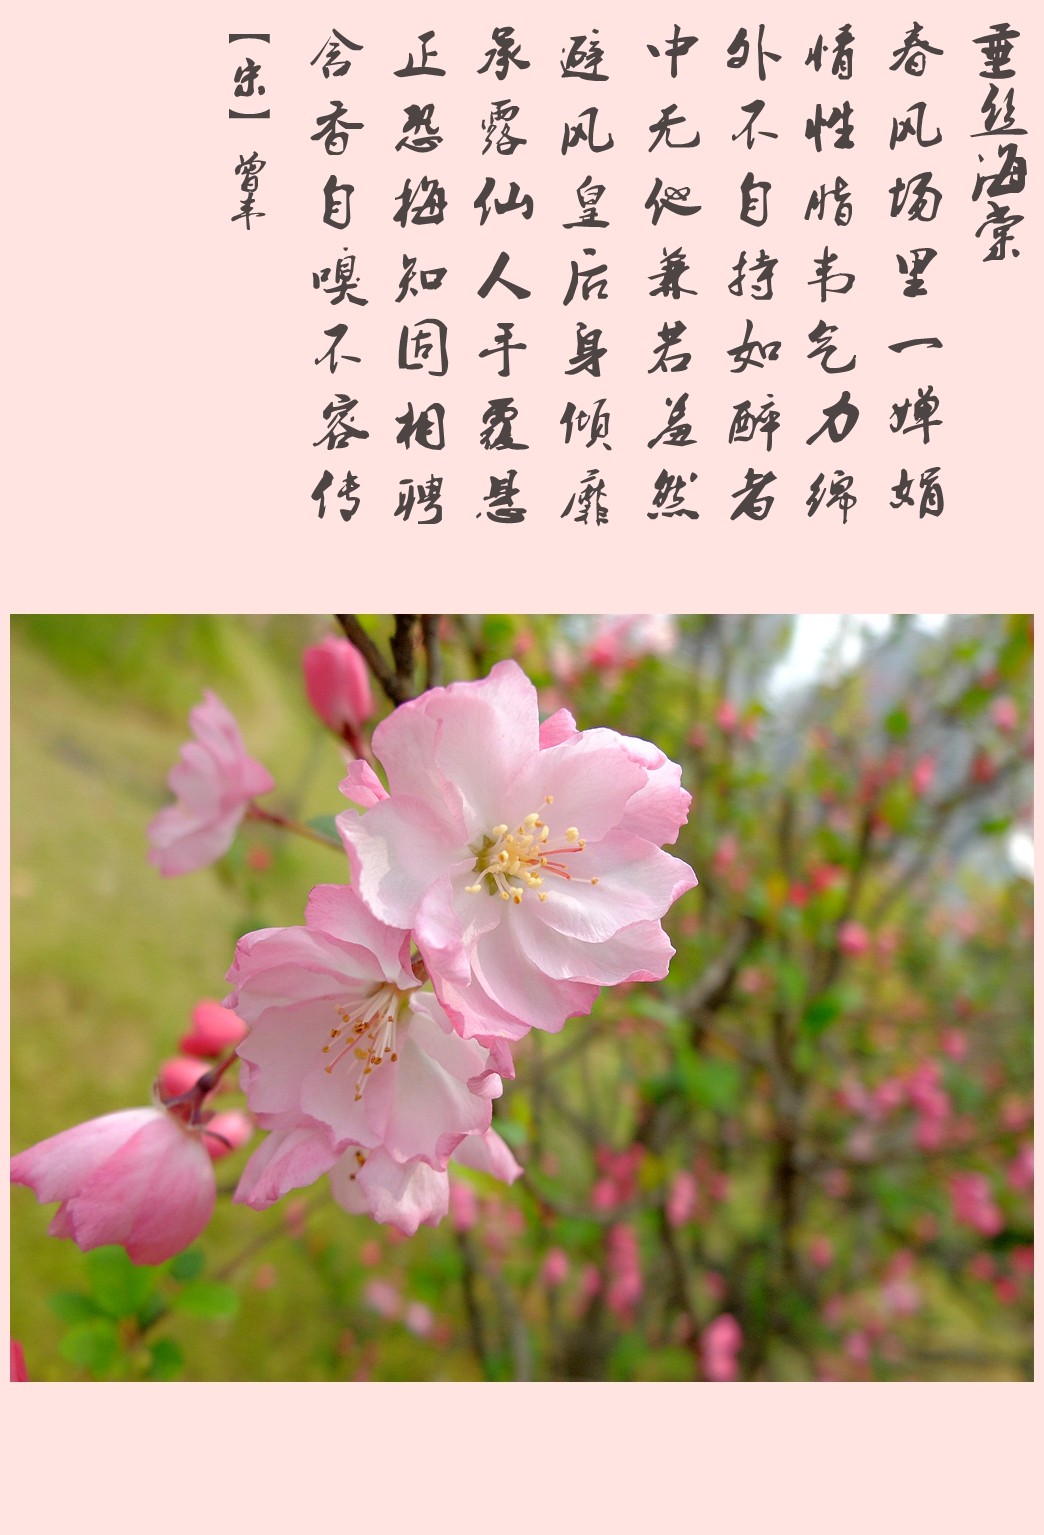 海棠花的样子描述图片